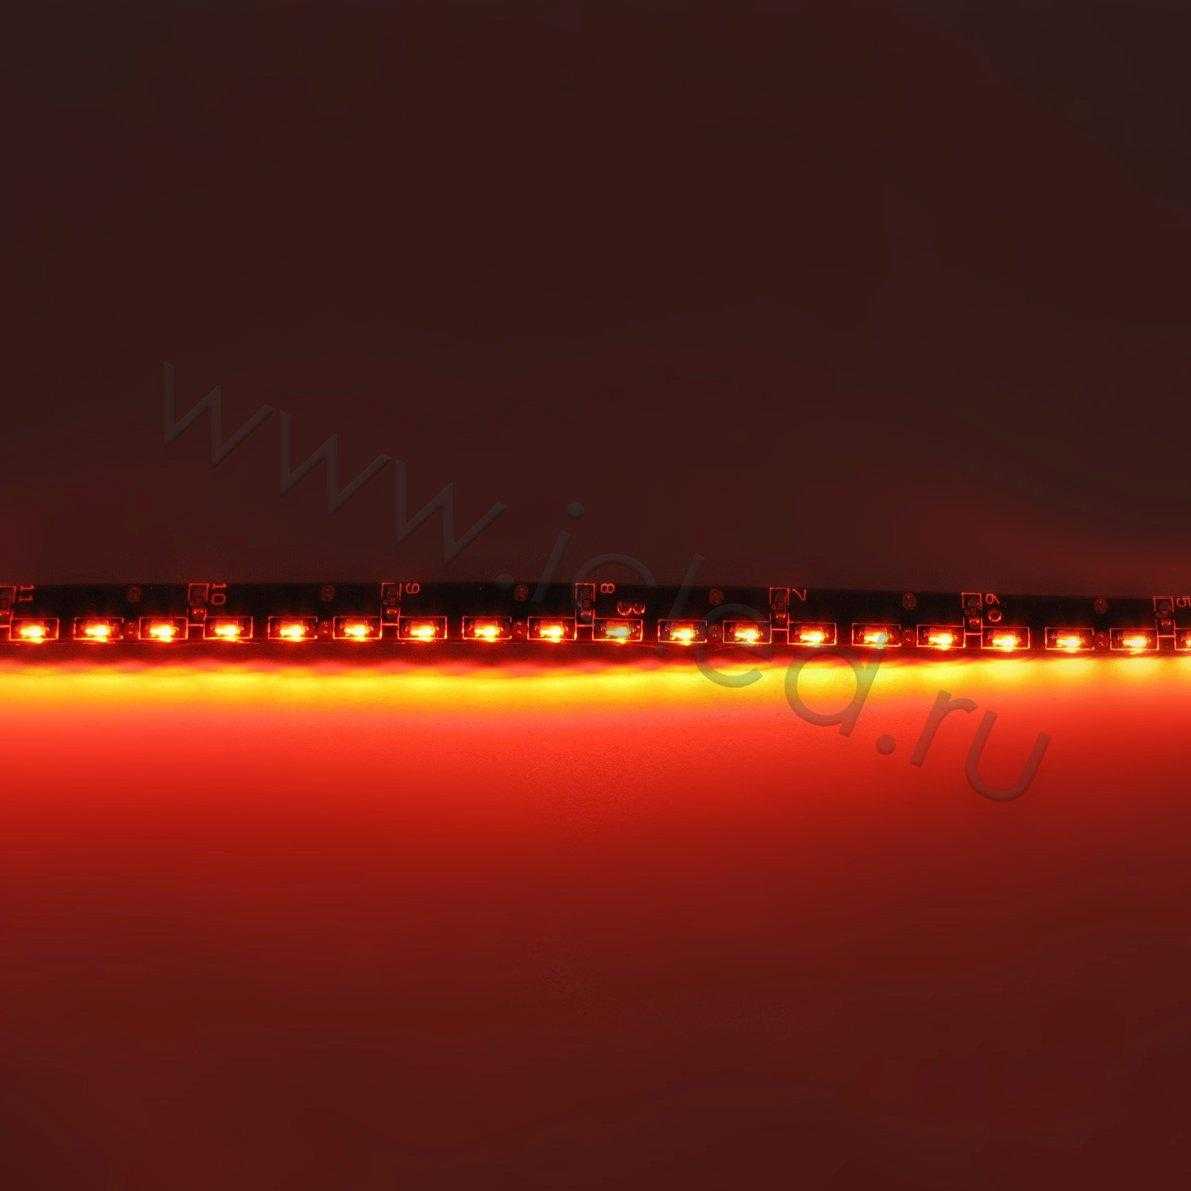 Влагозащищенные светодиодные ленты Светодиодная лента Standart PRO class, 335, 120 led/m, Red,12V, IP65 Icled